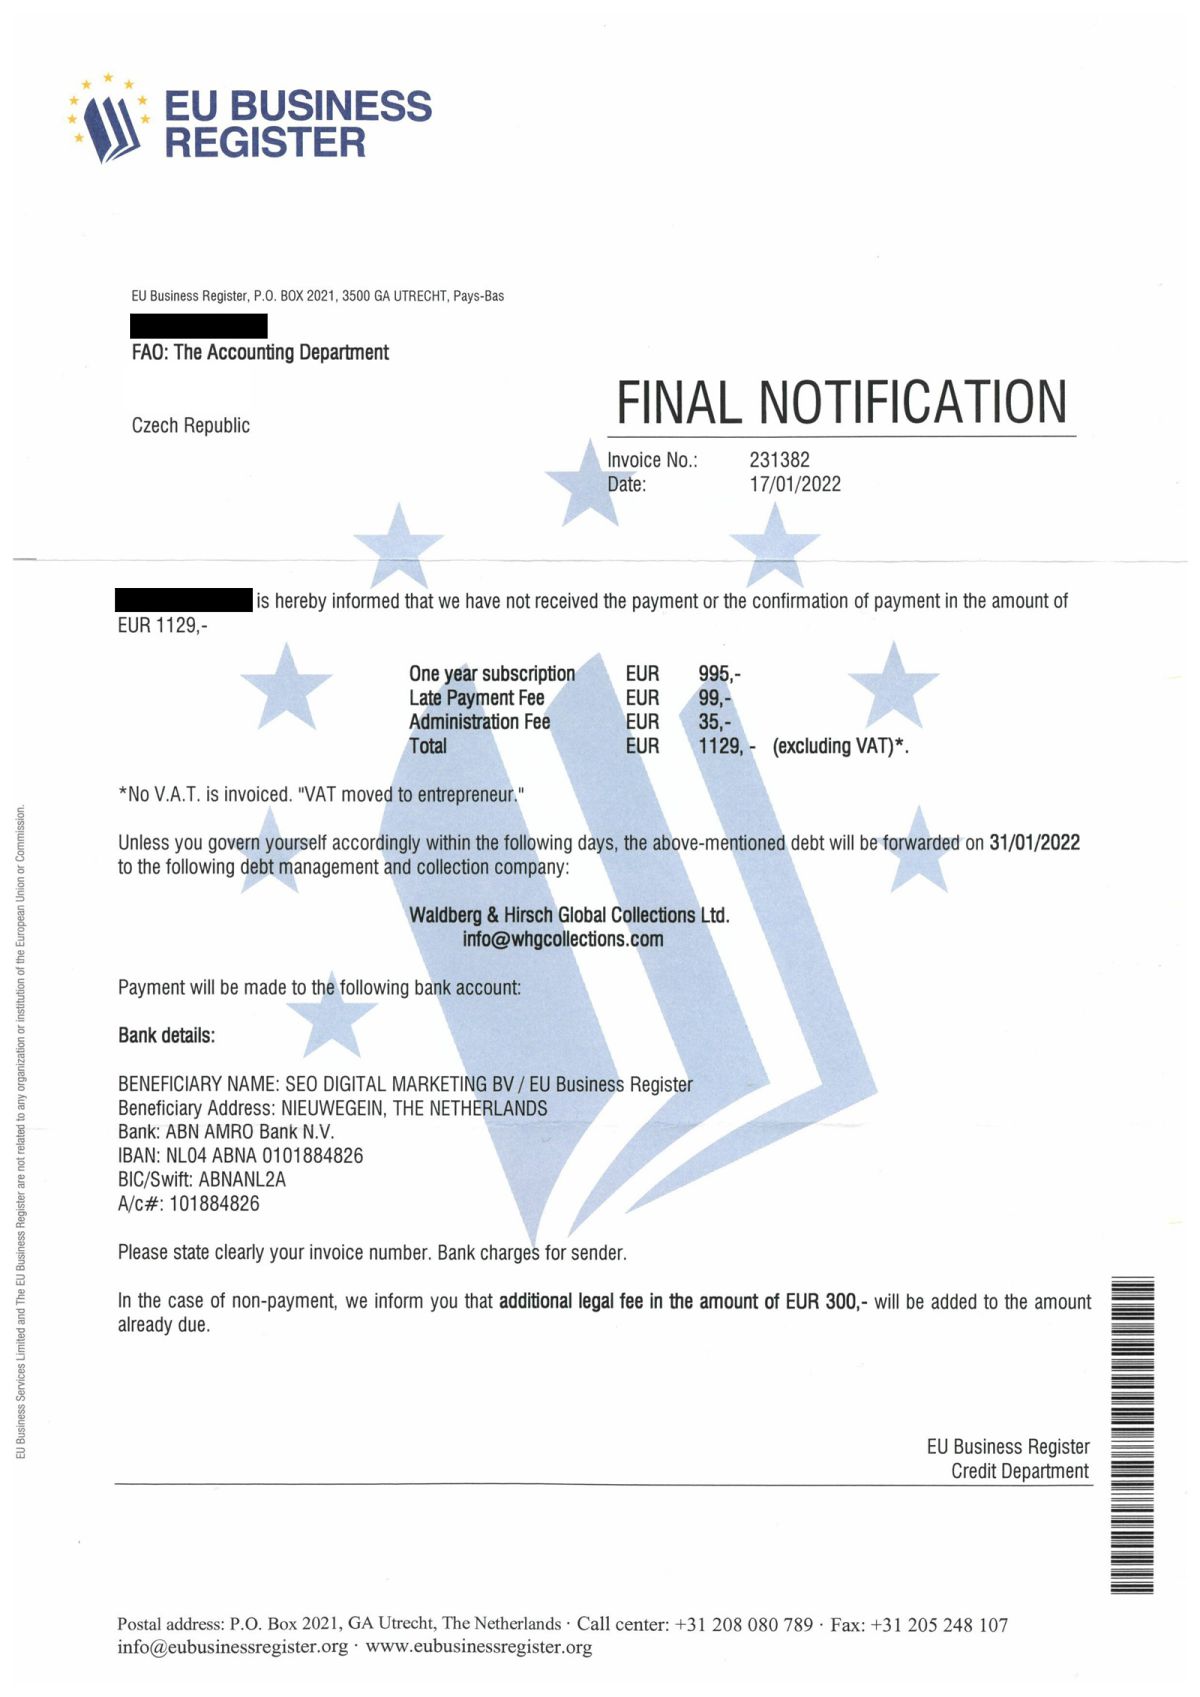 “EU Business Register” spam: Co se stane, když nezaplatíte